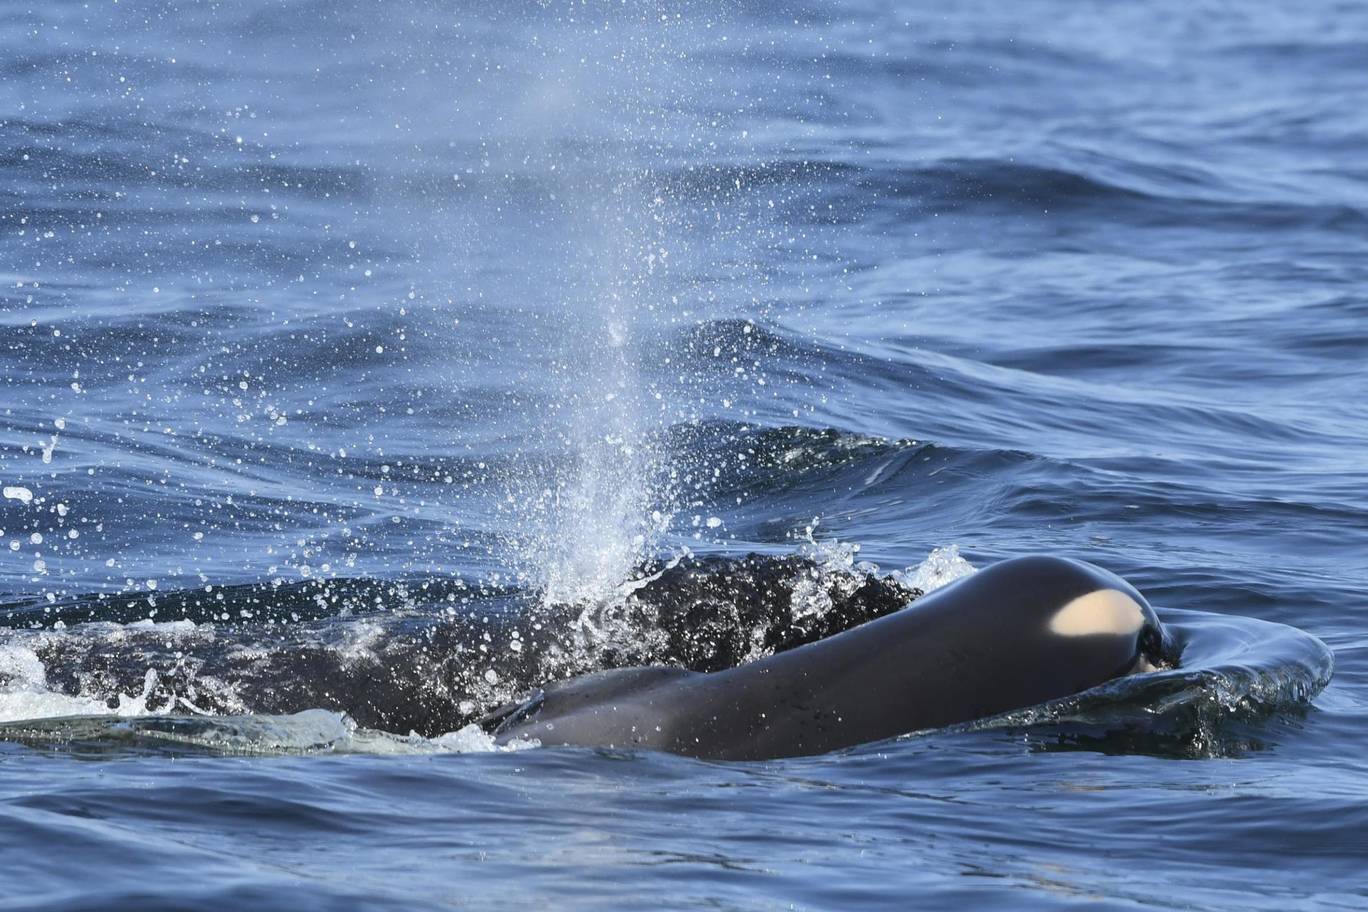 Cá voi sát thủ mẹ đau buồn mang xác con qua đại dương suốt 16 ngày - 1